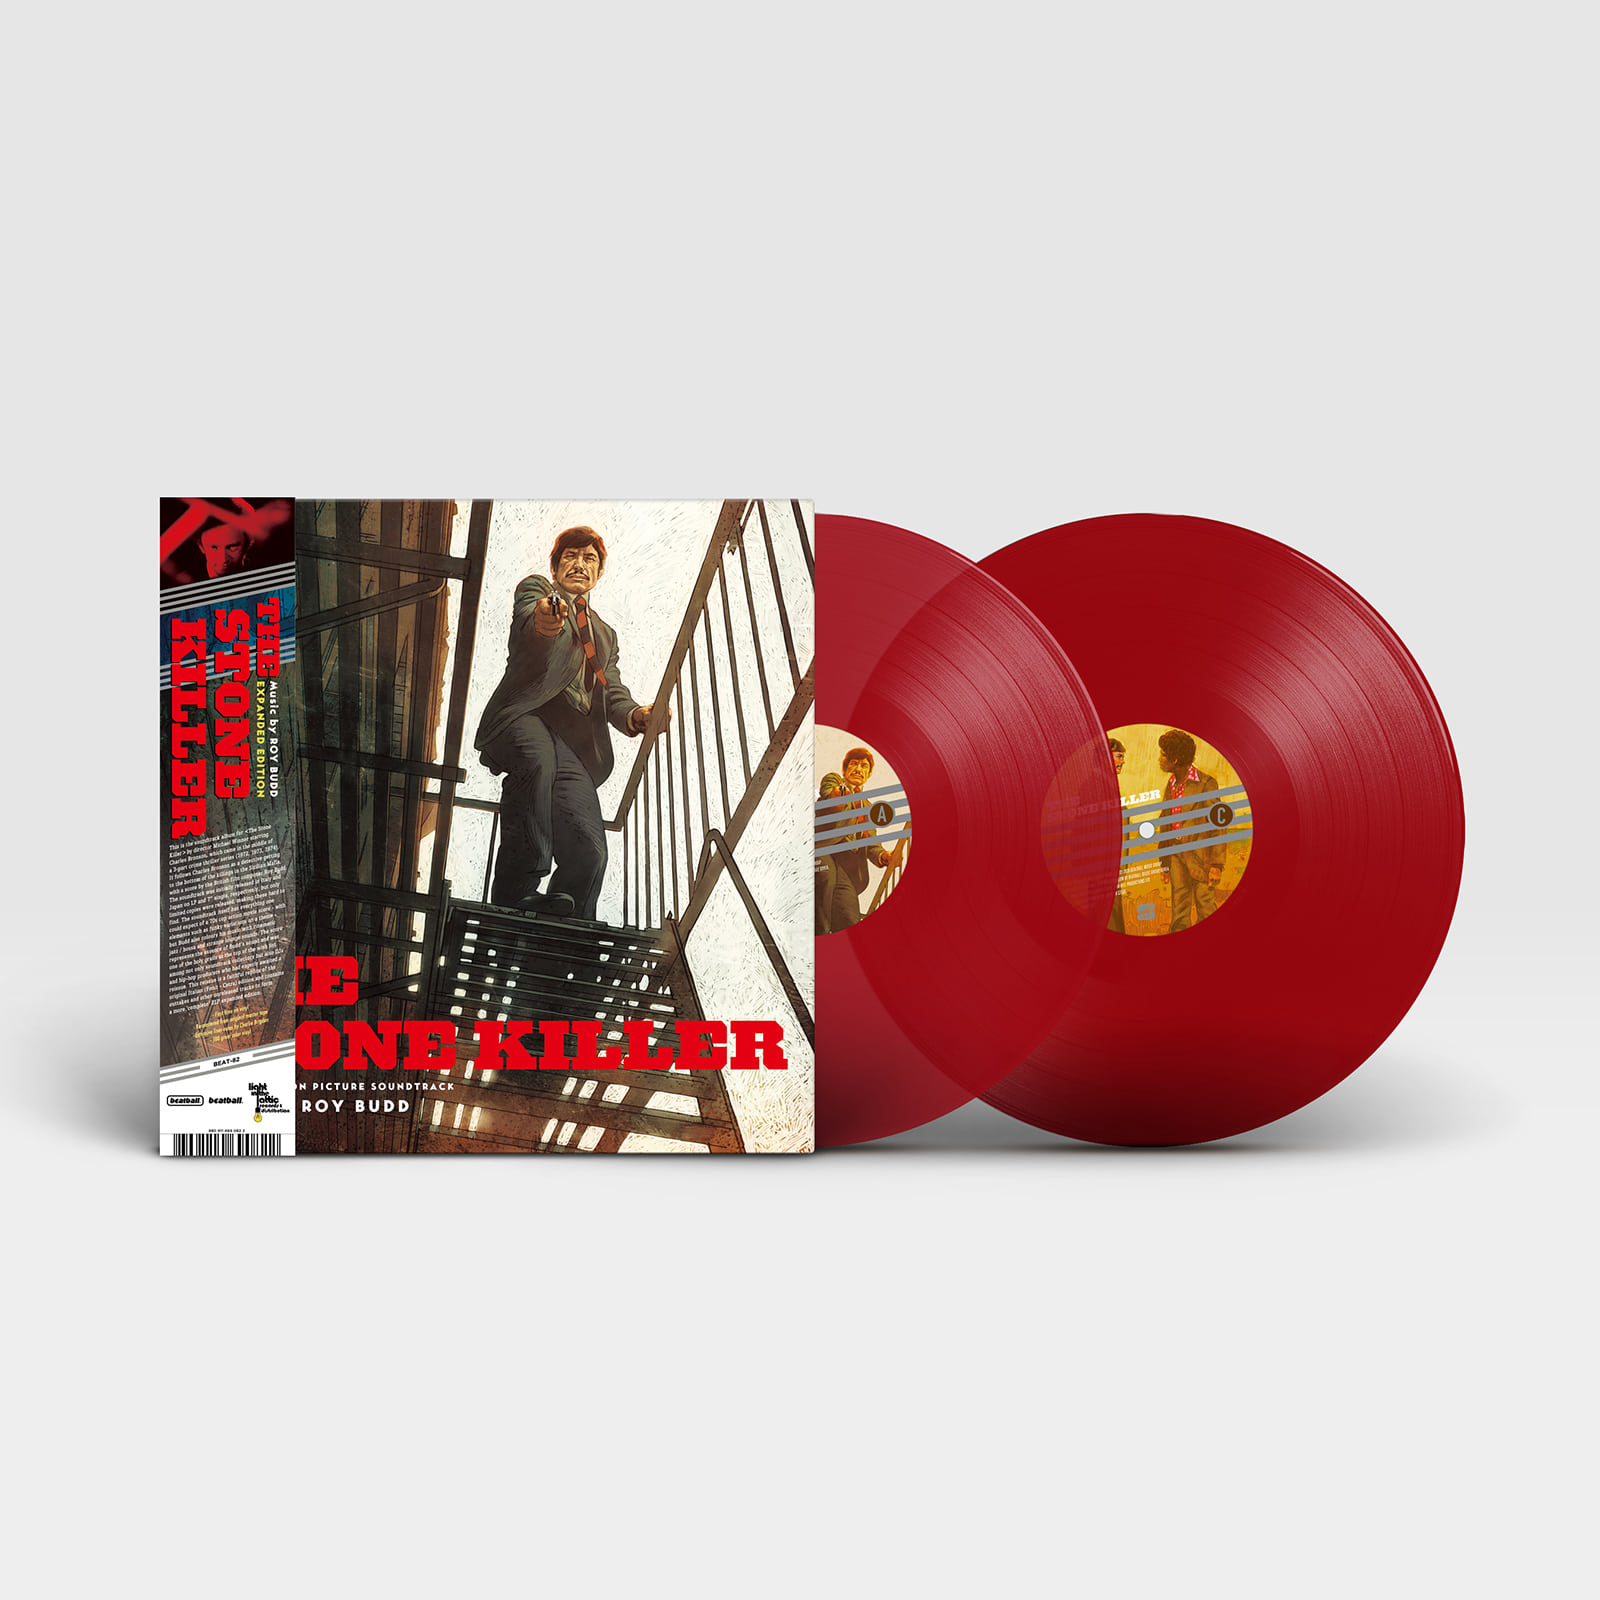 신디케이트 영화음악 (The Stone Killer OST by Roy Budd) [레드 컬러 2LP]